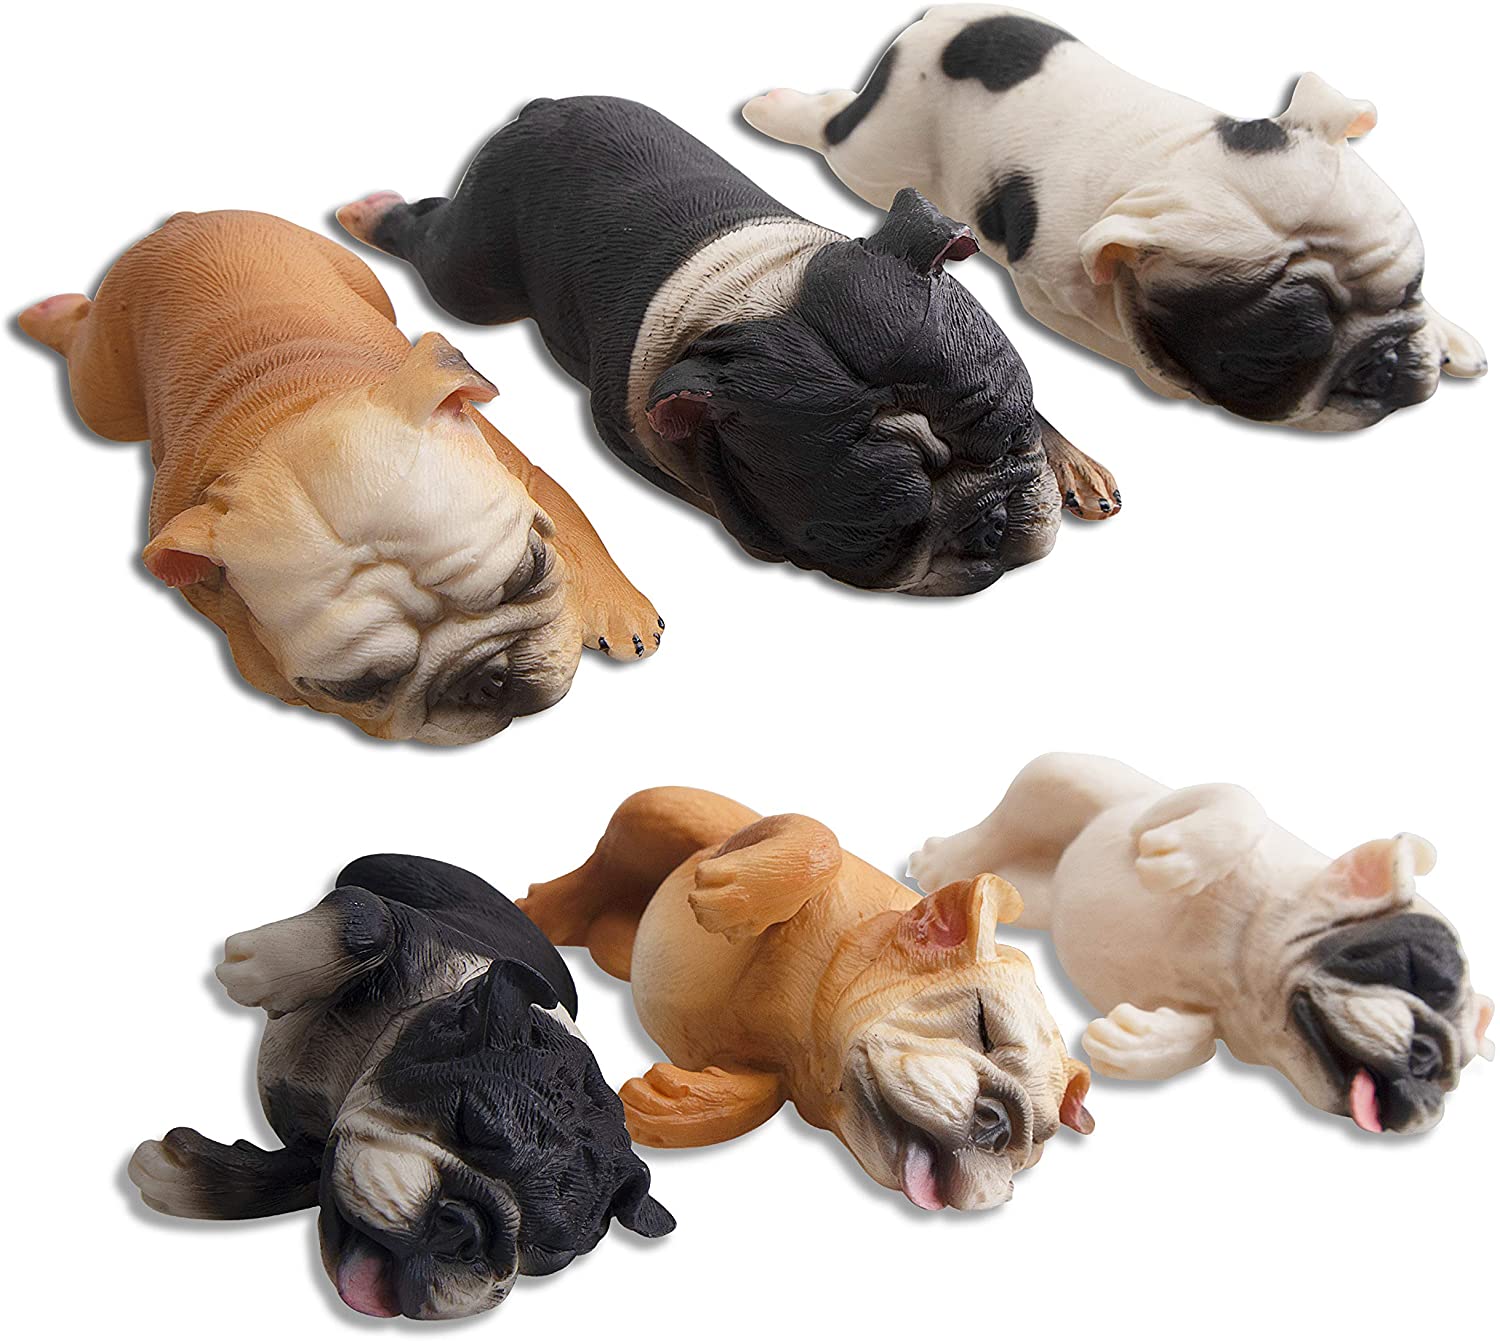 Toymany 犬フィギュア フレンチブルドッグ 動物フィギュアセット リアルな動物模型 6pcs入 眠い 睡眠